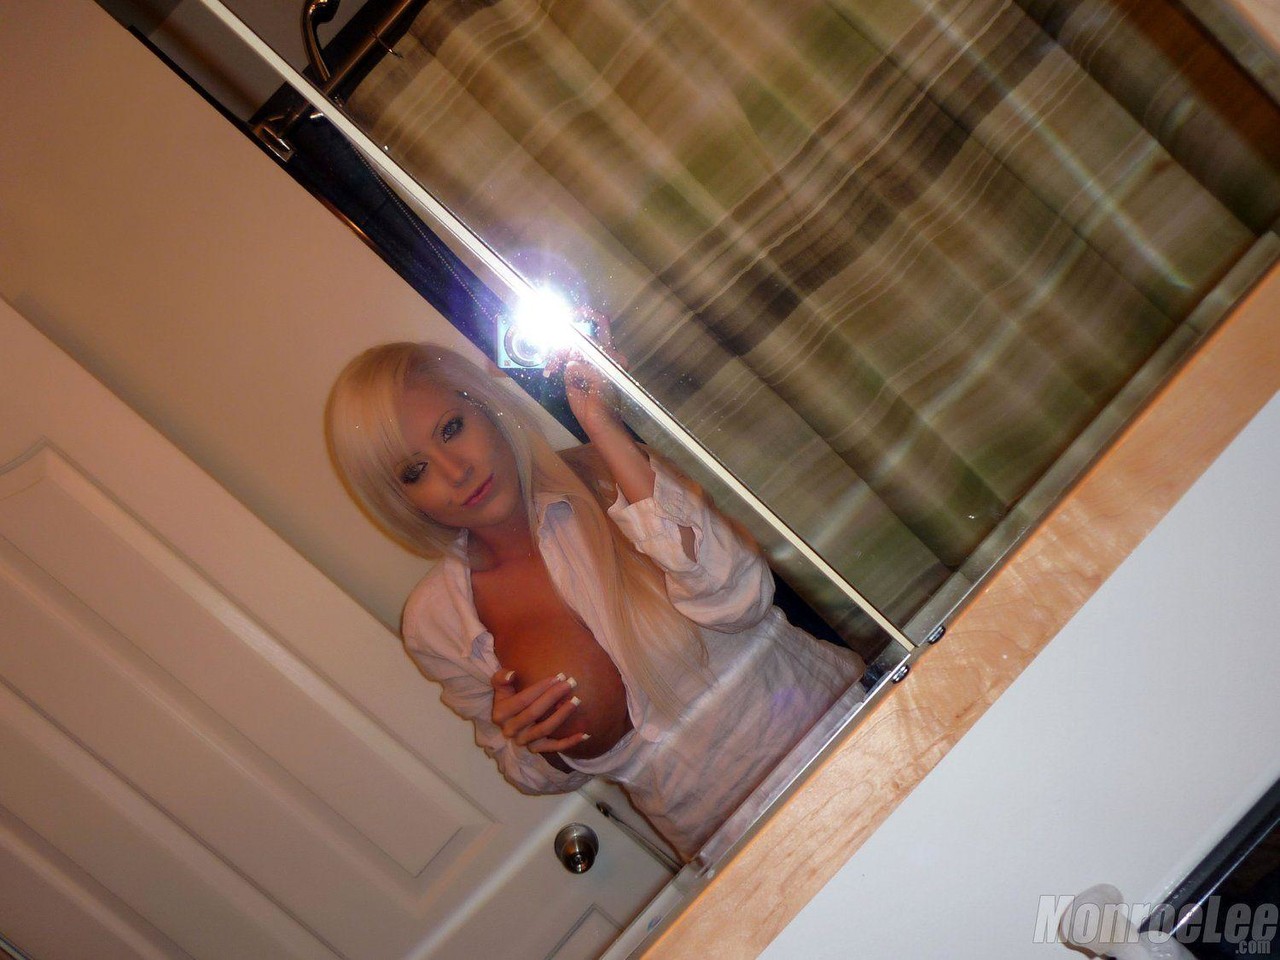 Monroe Lee Bathroom Selfies 色情照片 #425648148